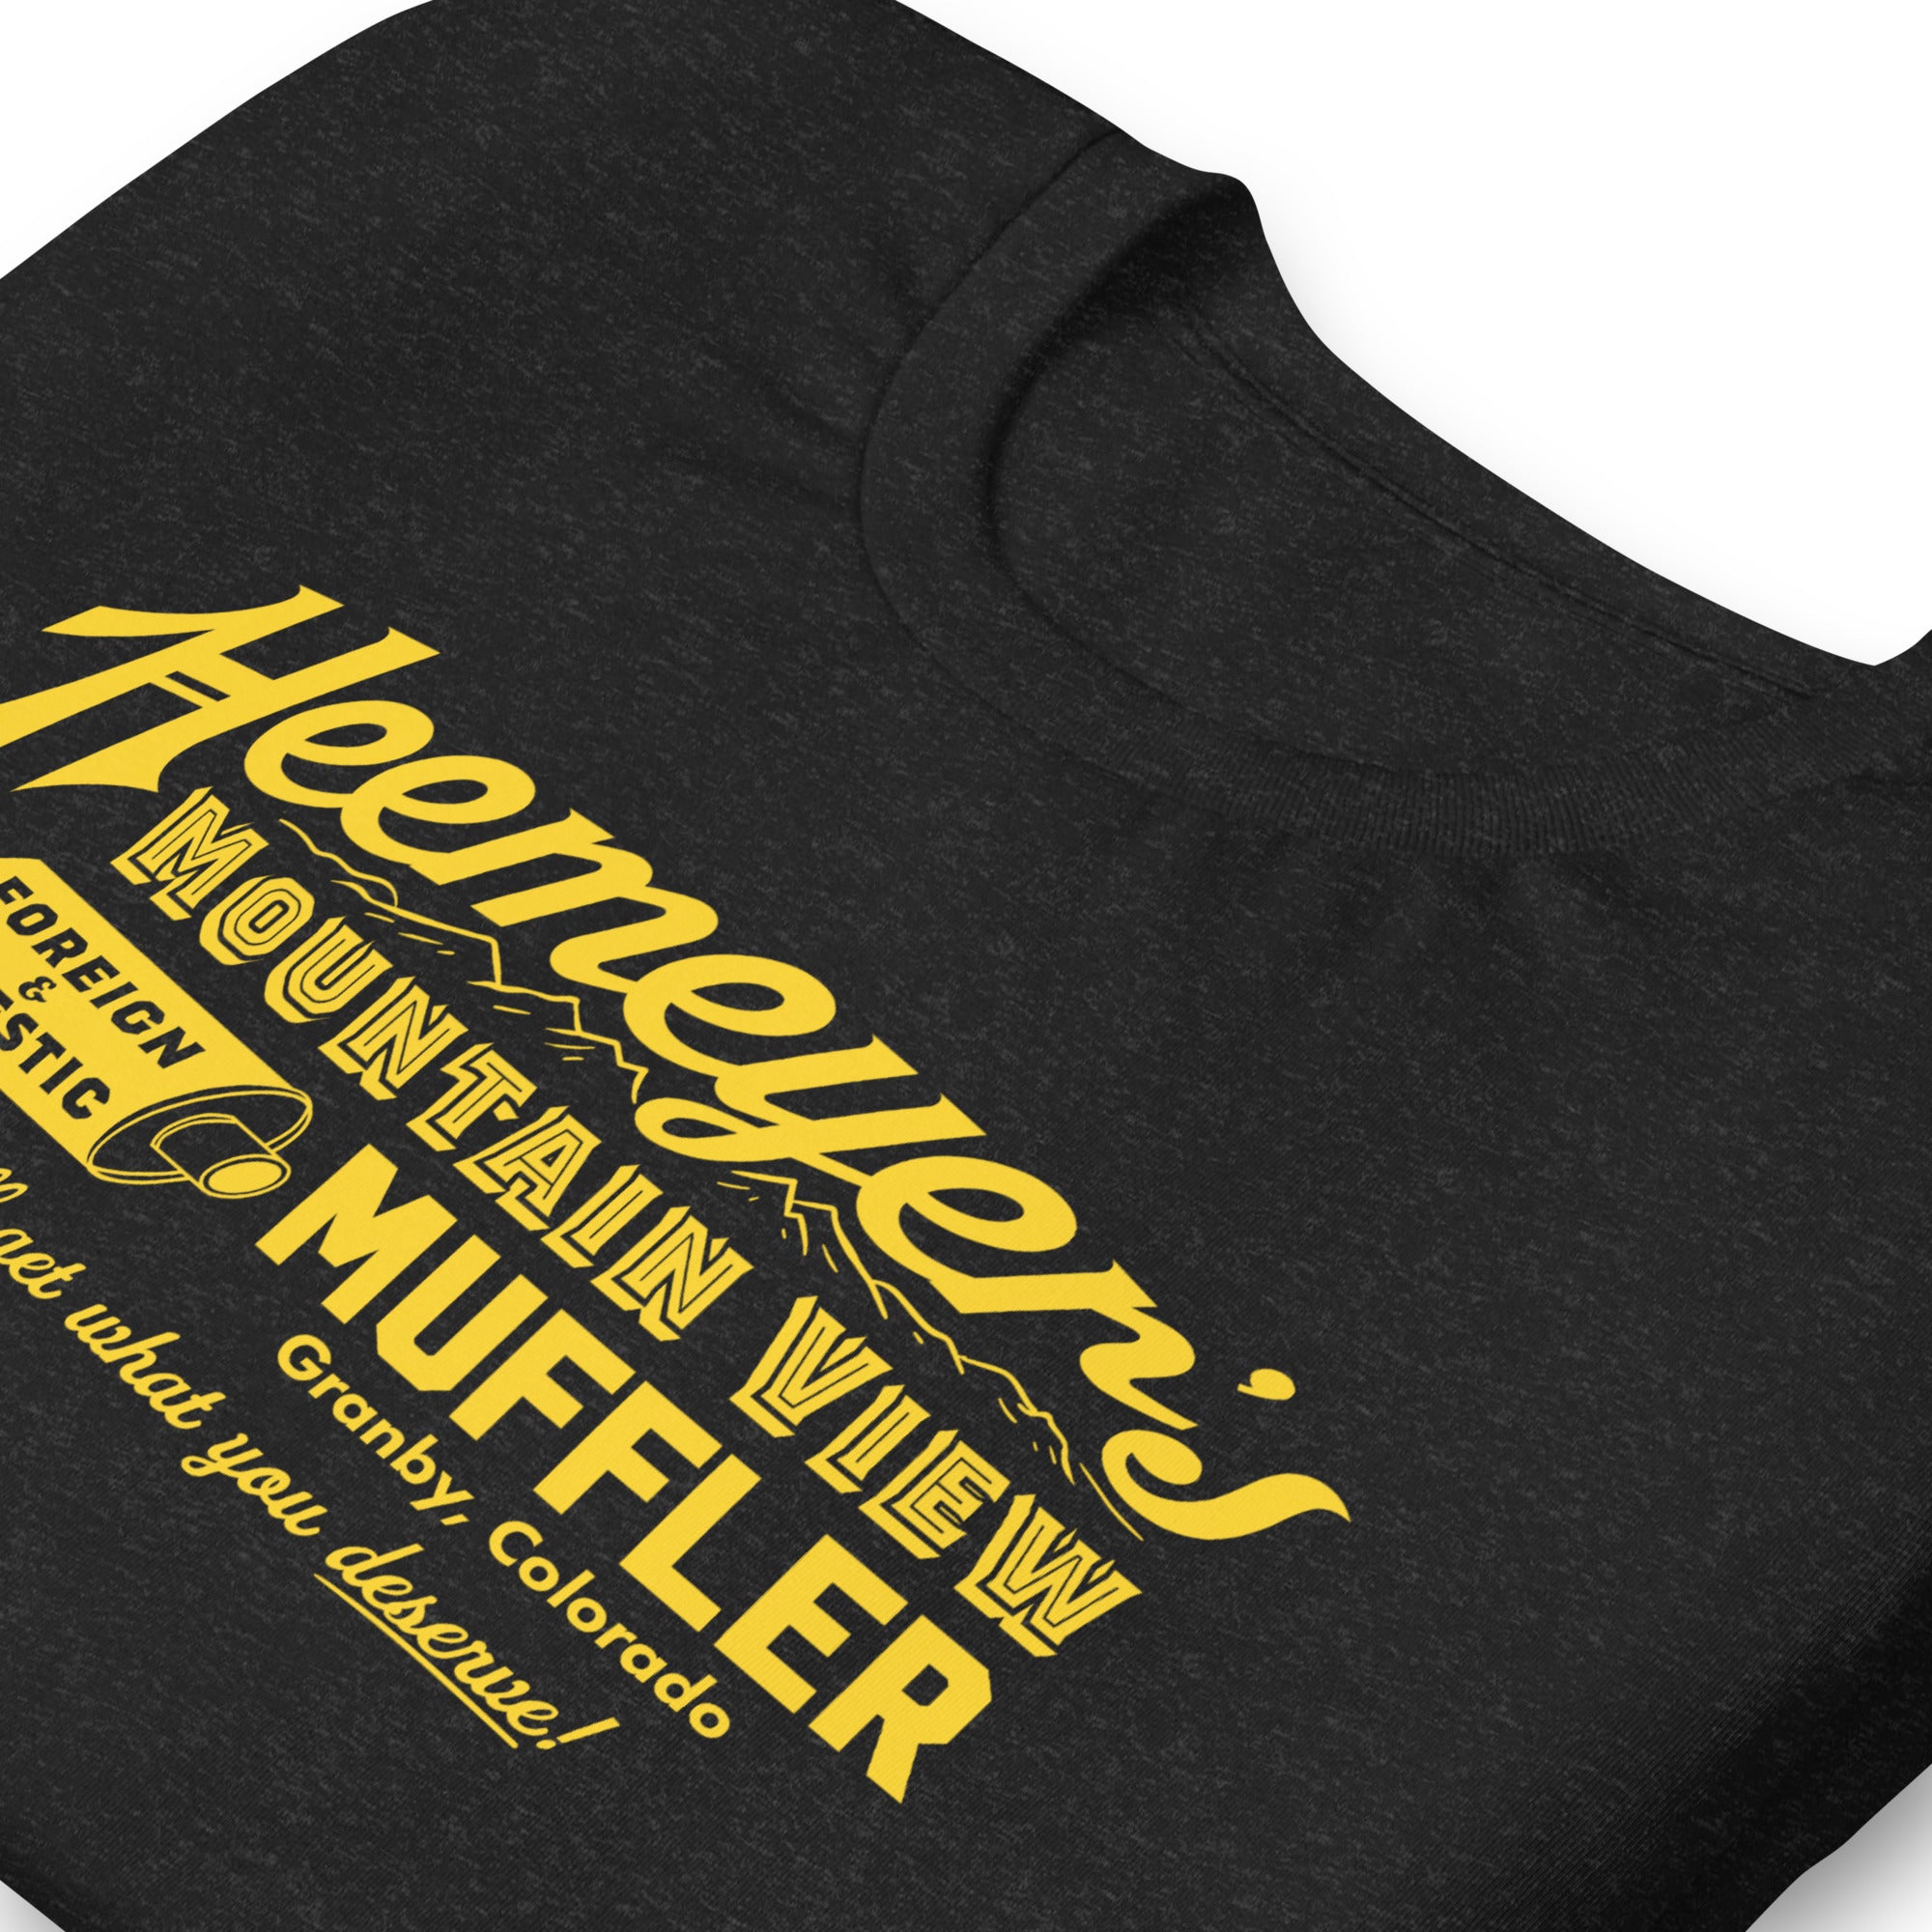 Heemeyer's Mountain View Muffler T-Shirt